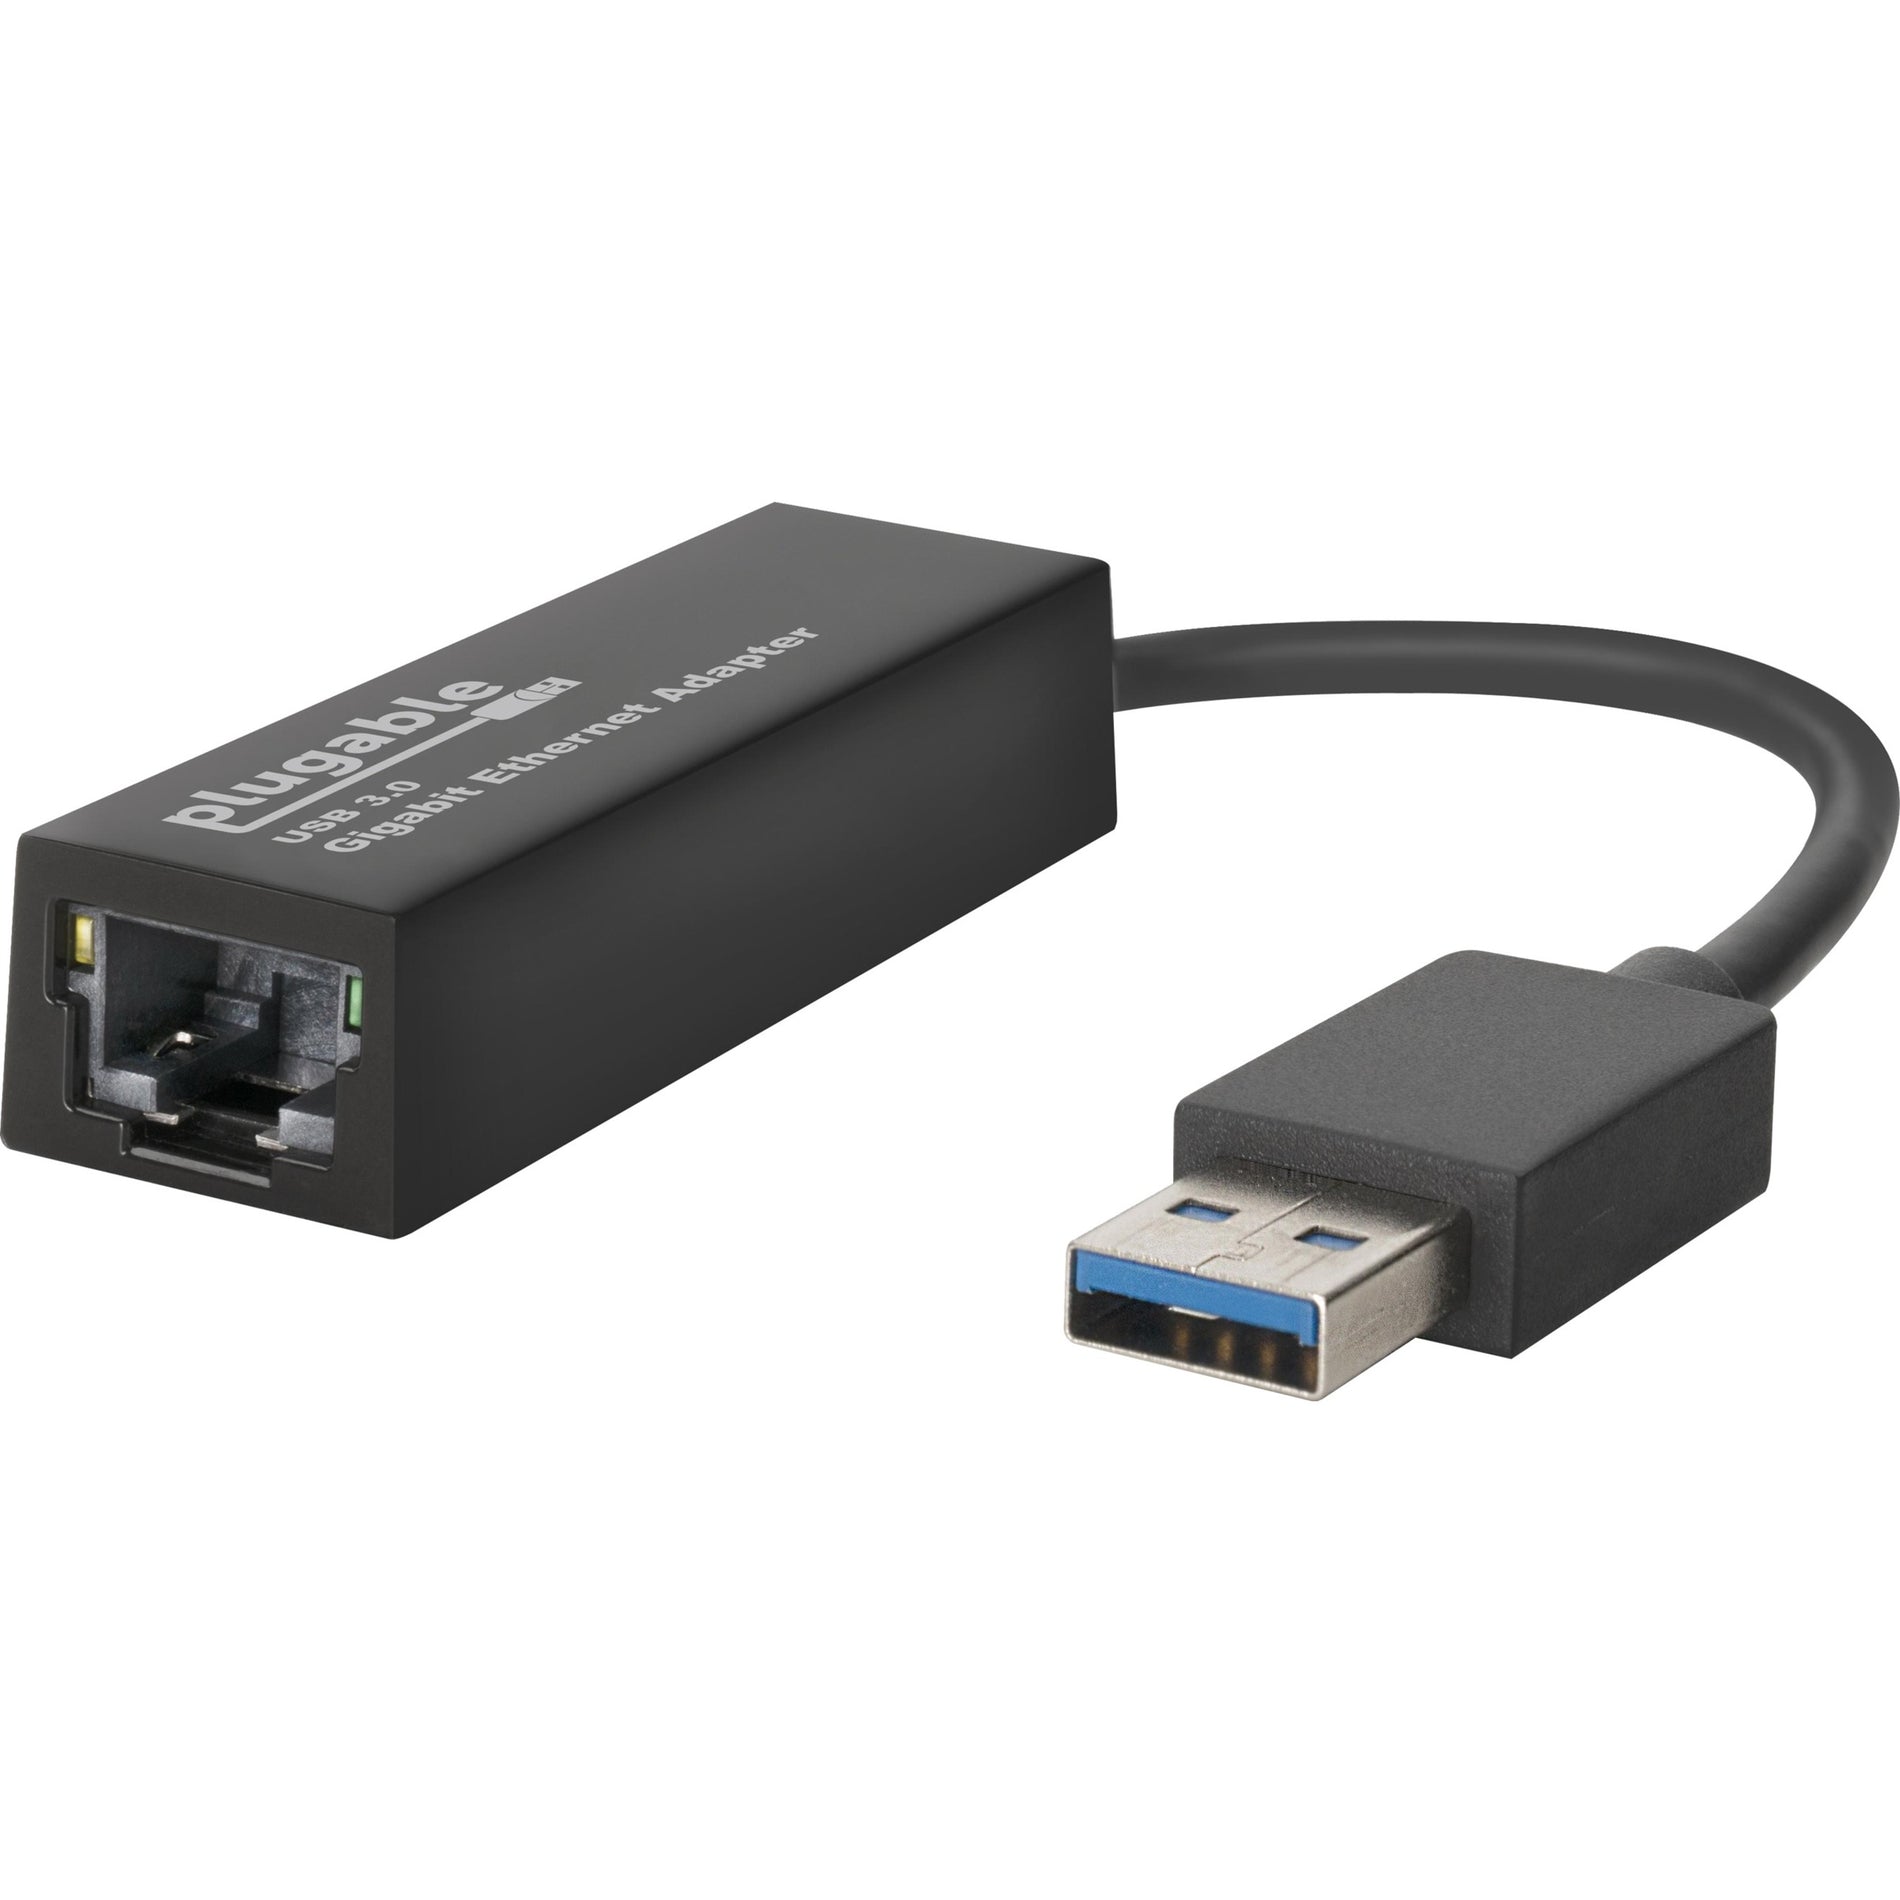 ブランド名: Plugable  USB3-E1000 -> USB3-E1000 USB -> USB Ethernet Adapter -> イーサネットアダプタ USB -> USB 3.0 -> 3.0 Gigabit Ethernet -> ギガビットイーサネット High-Speed -> ハイスピード Data Transfer -> データ転送